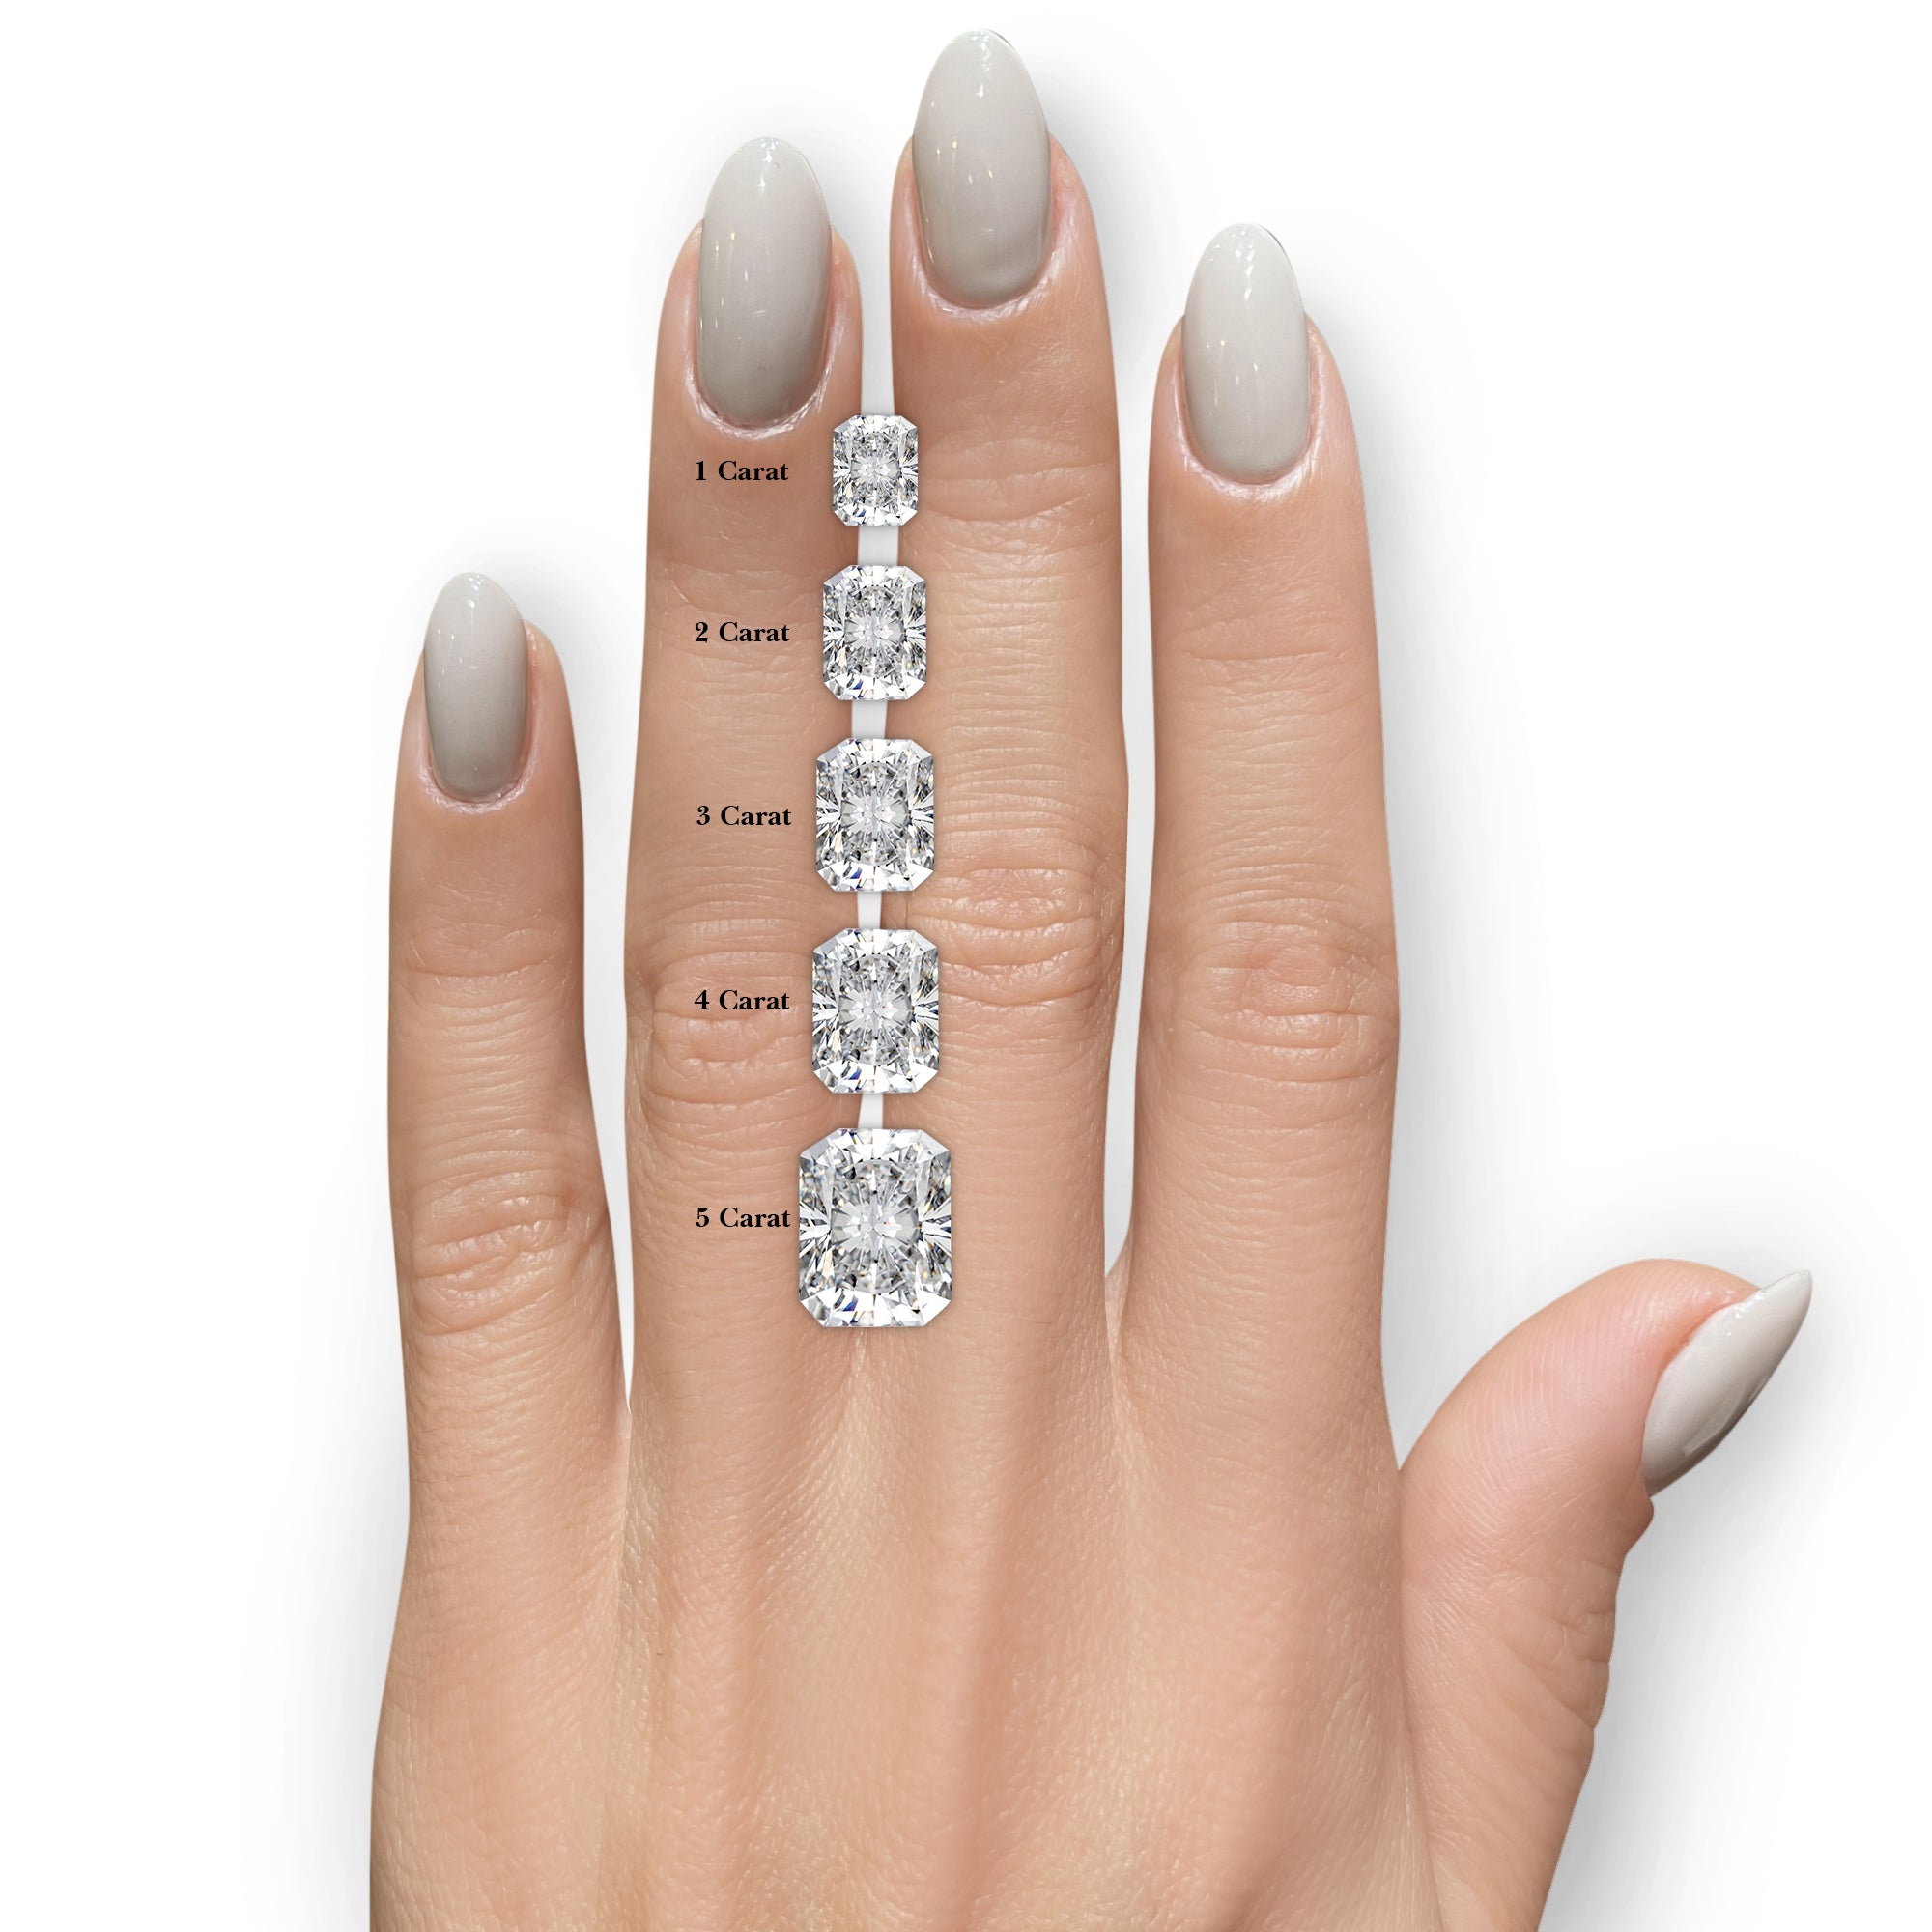 Andrea Moissanite & Diamonds Ring -18K White Gold